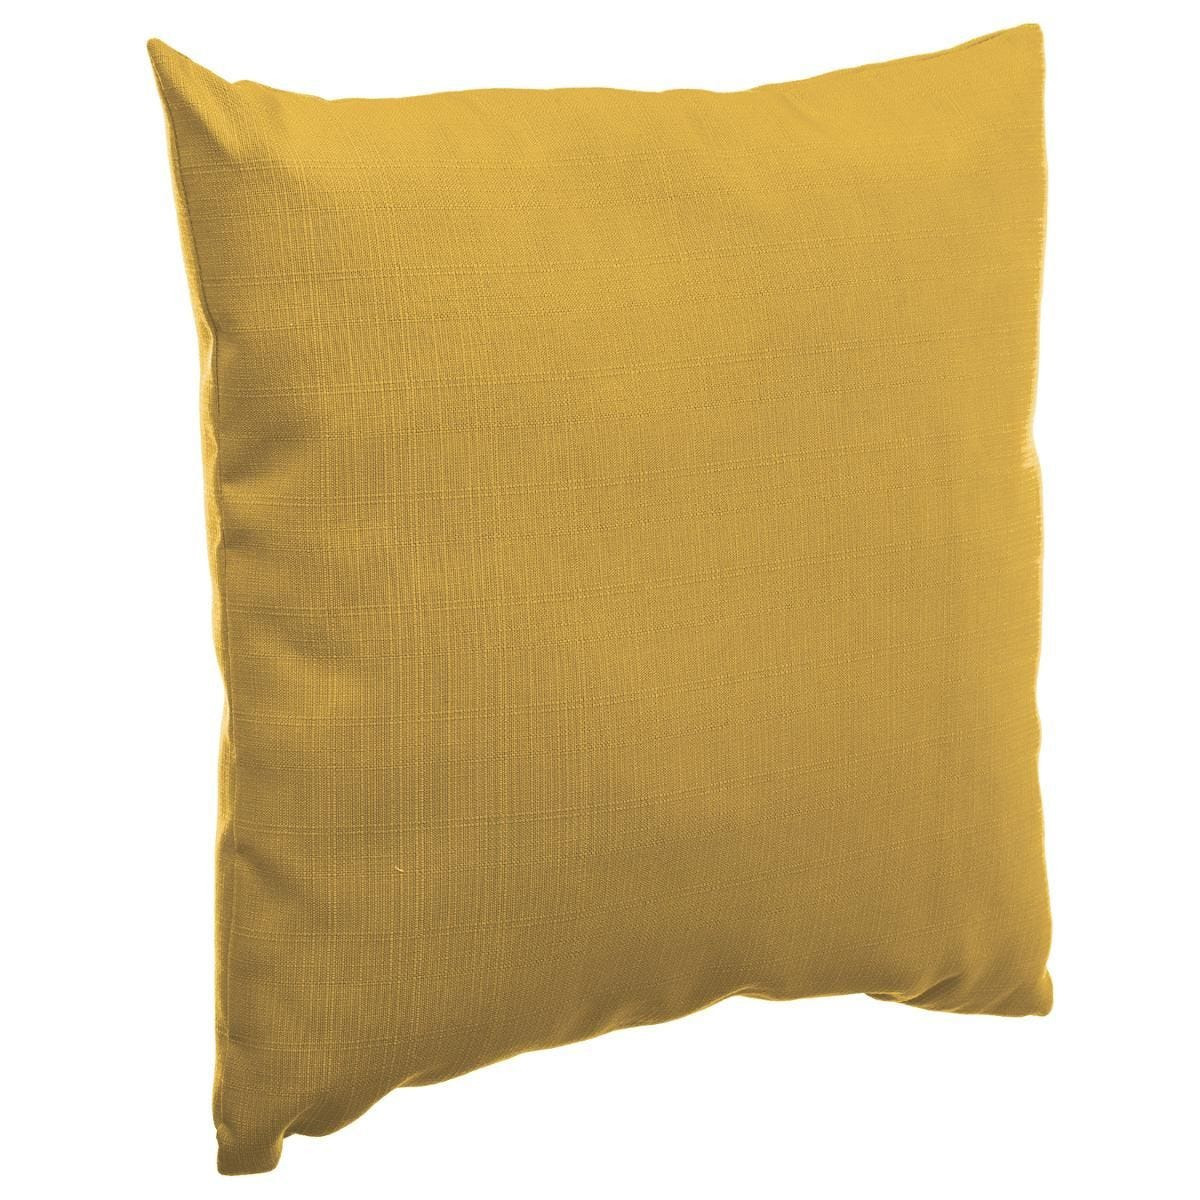 Bank-sier-tuin kussens voor binnen en buiten in de kleur mosterd geel 40 x 40 x 10 cm